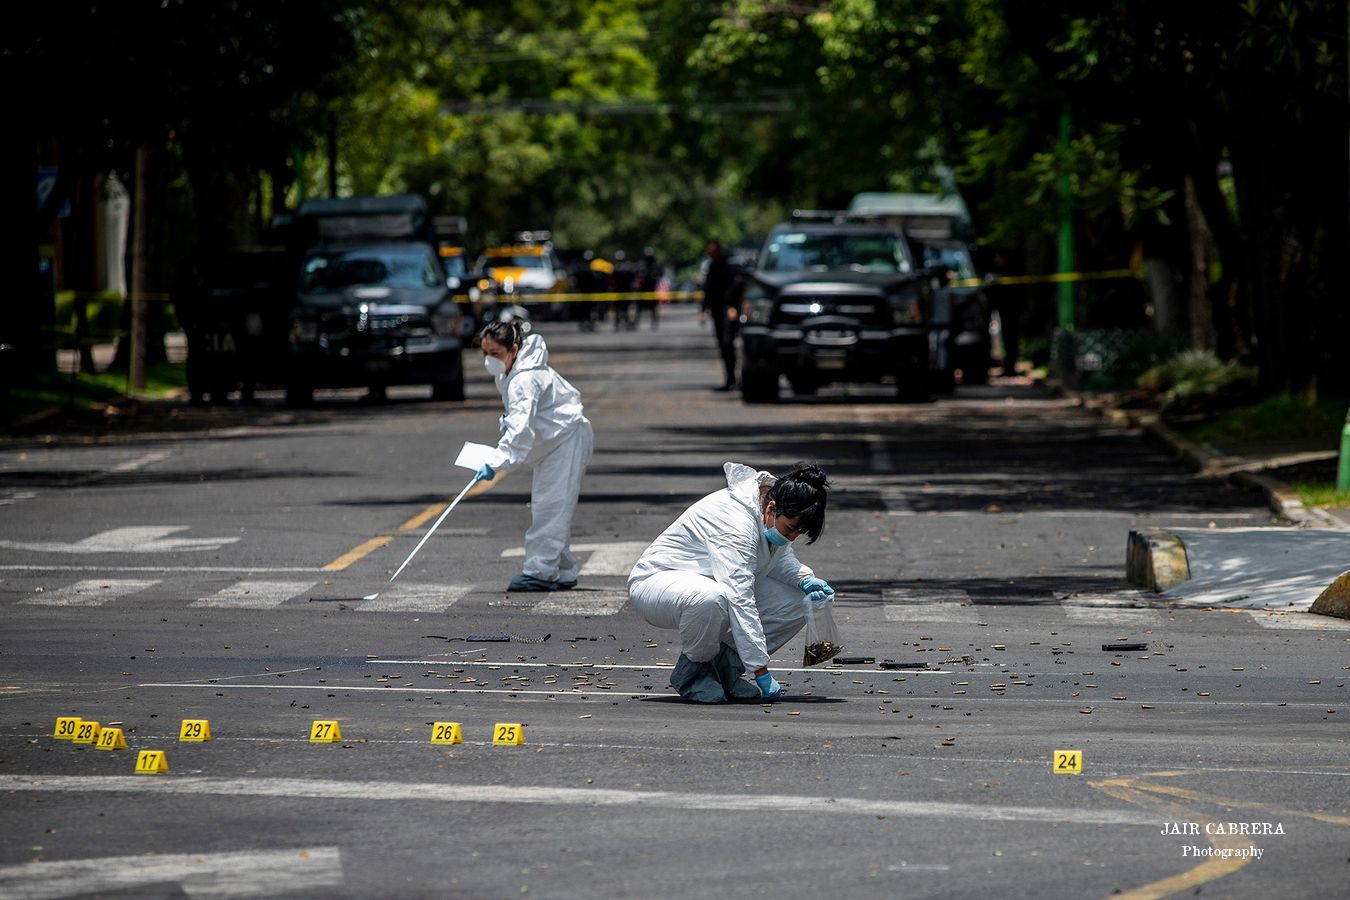 Un atentado para asesinar al secretario de seguridad de la Ciudad de México, ocurrió en la colonia Lomas de Chapultepec. Autoridades responsabilizaron a un Cártel del crimen organizado. Junio 2020